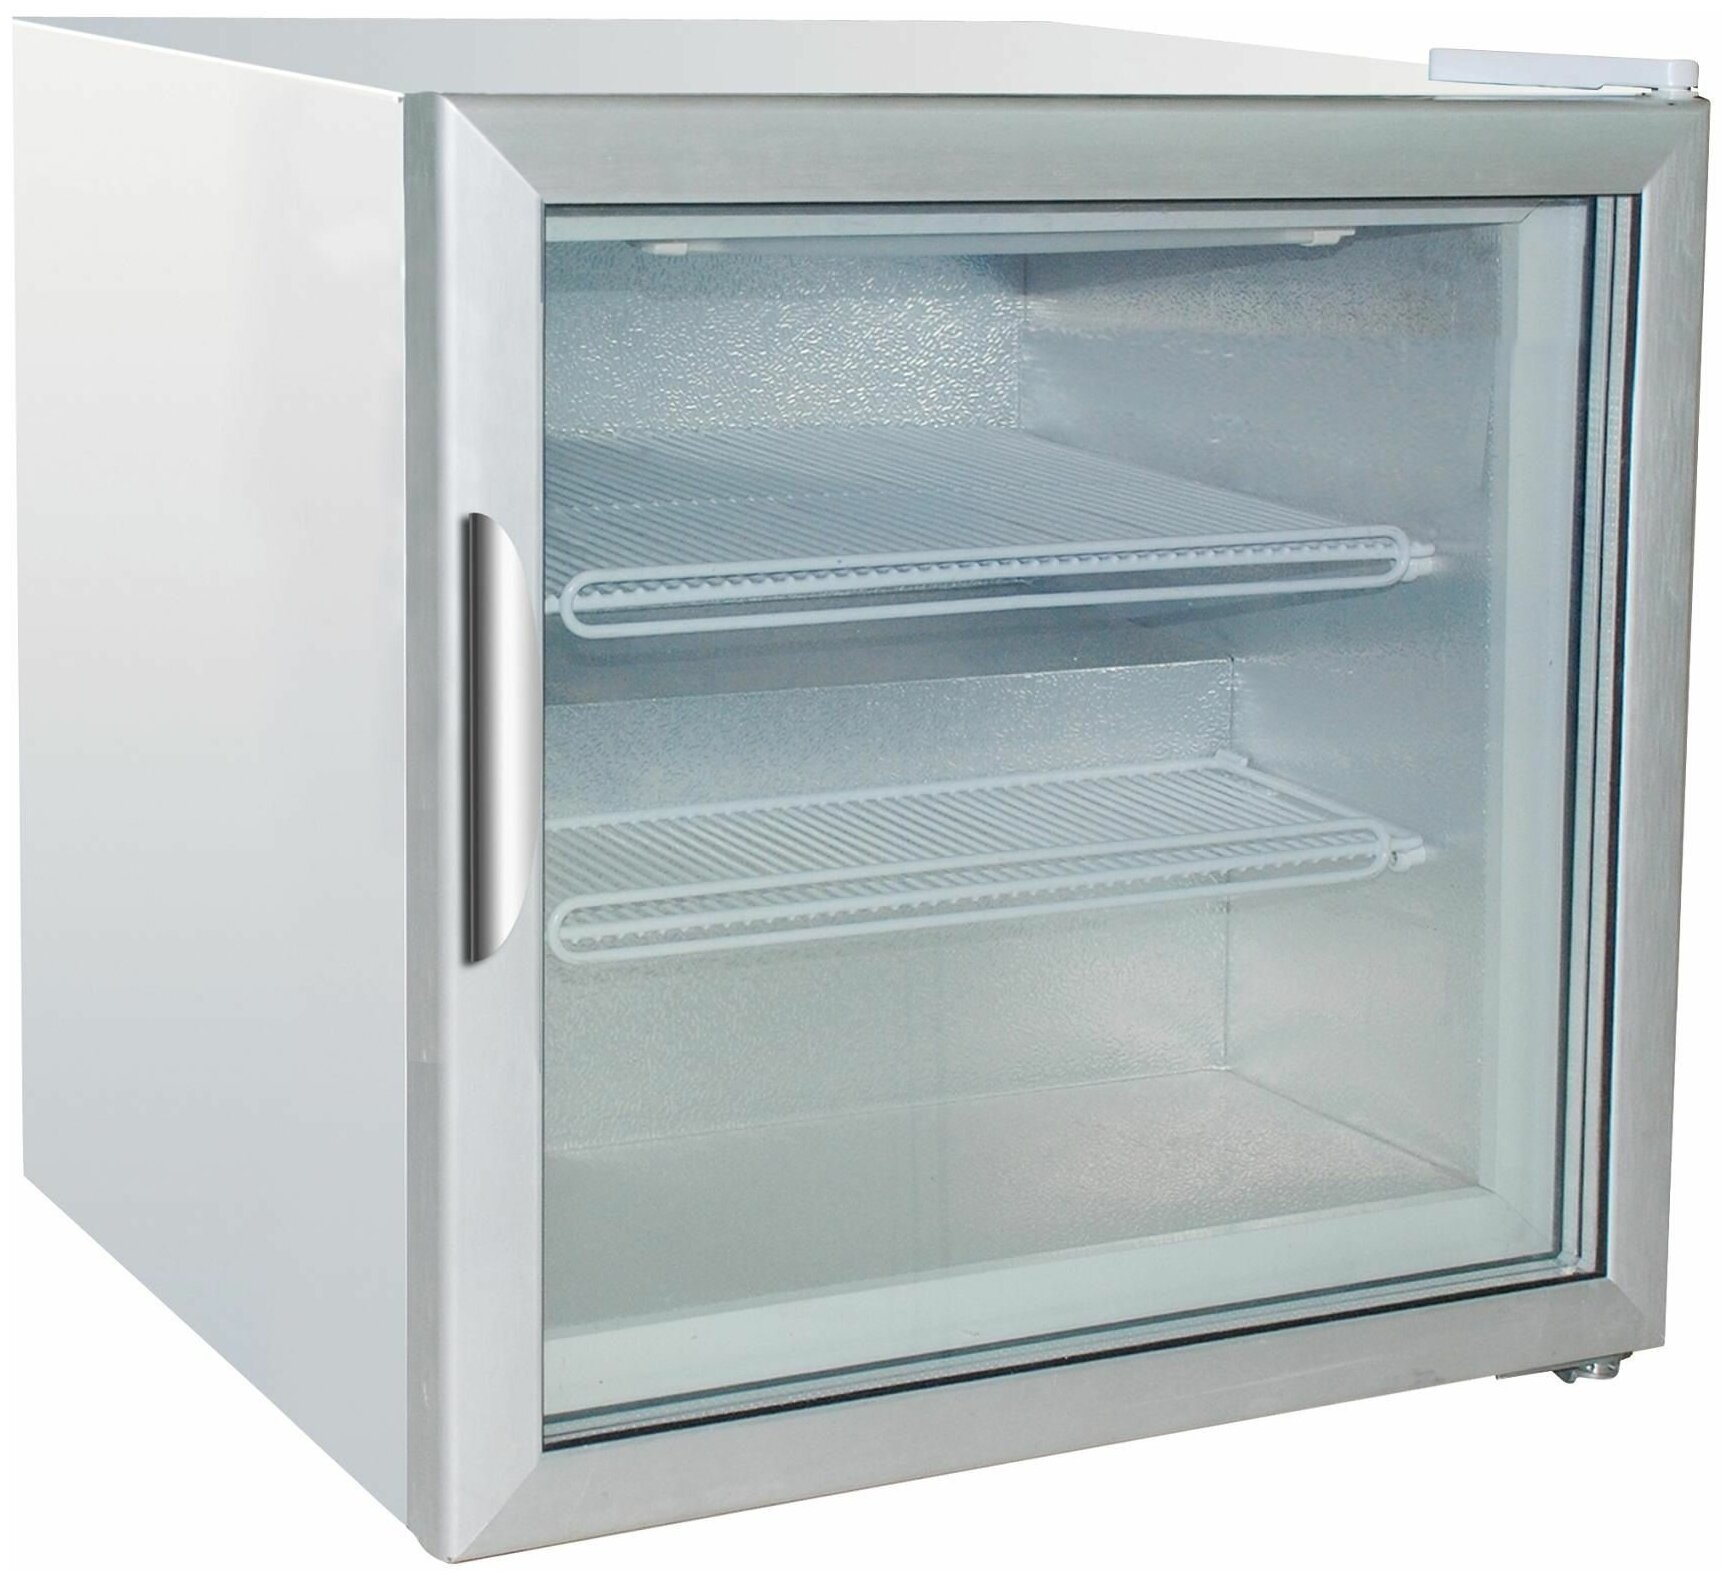 Шкаф морозильный VIATTO SD50G